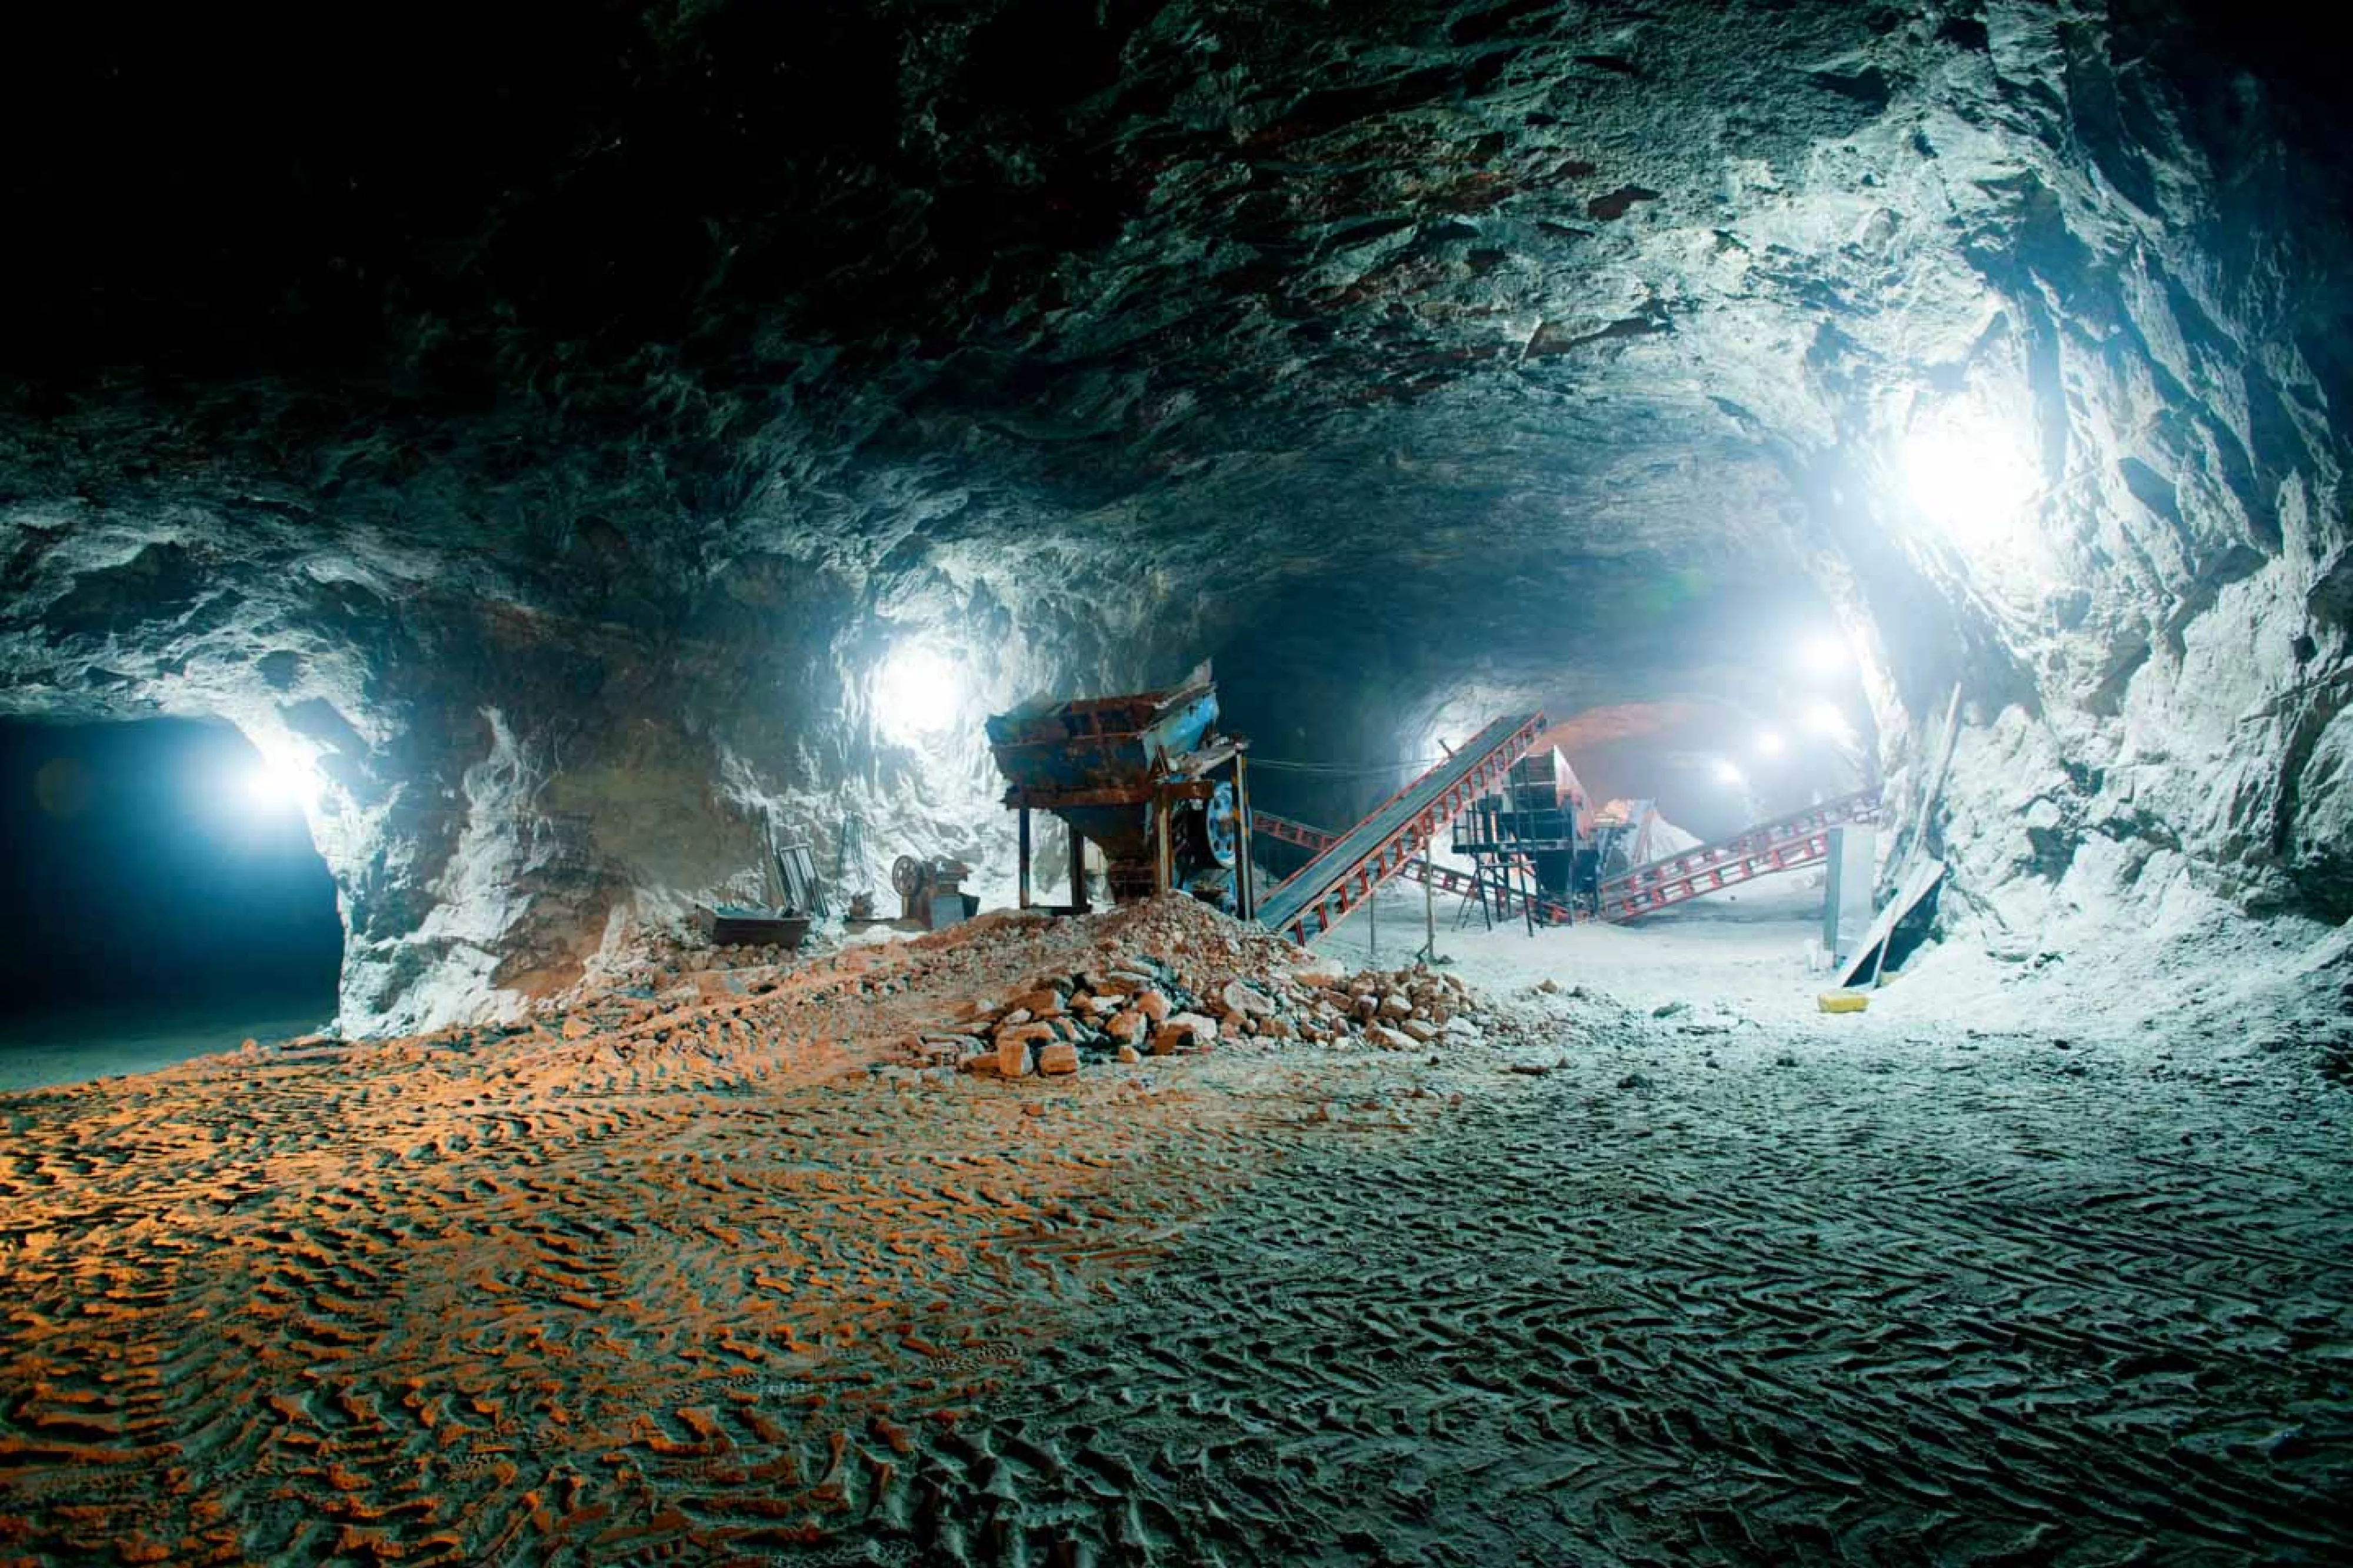 Mine work being done underground